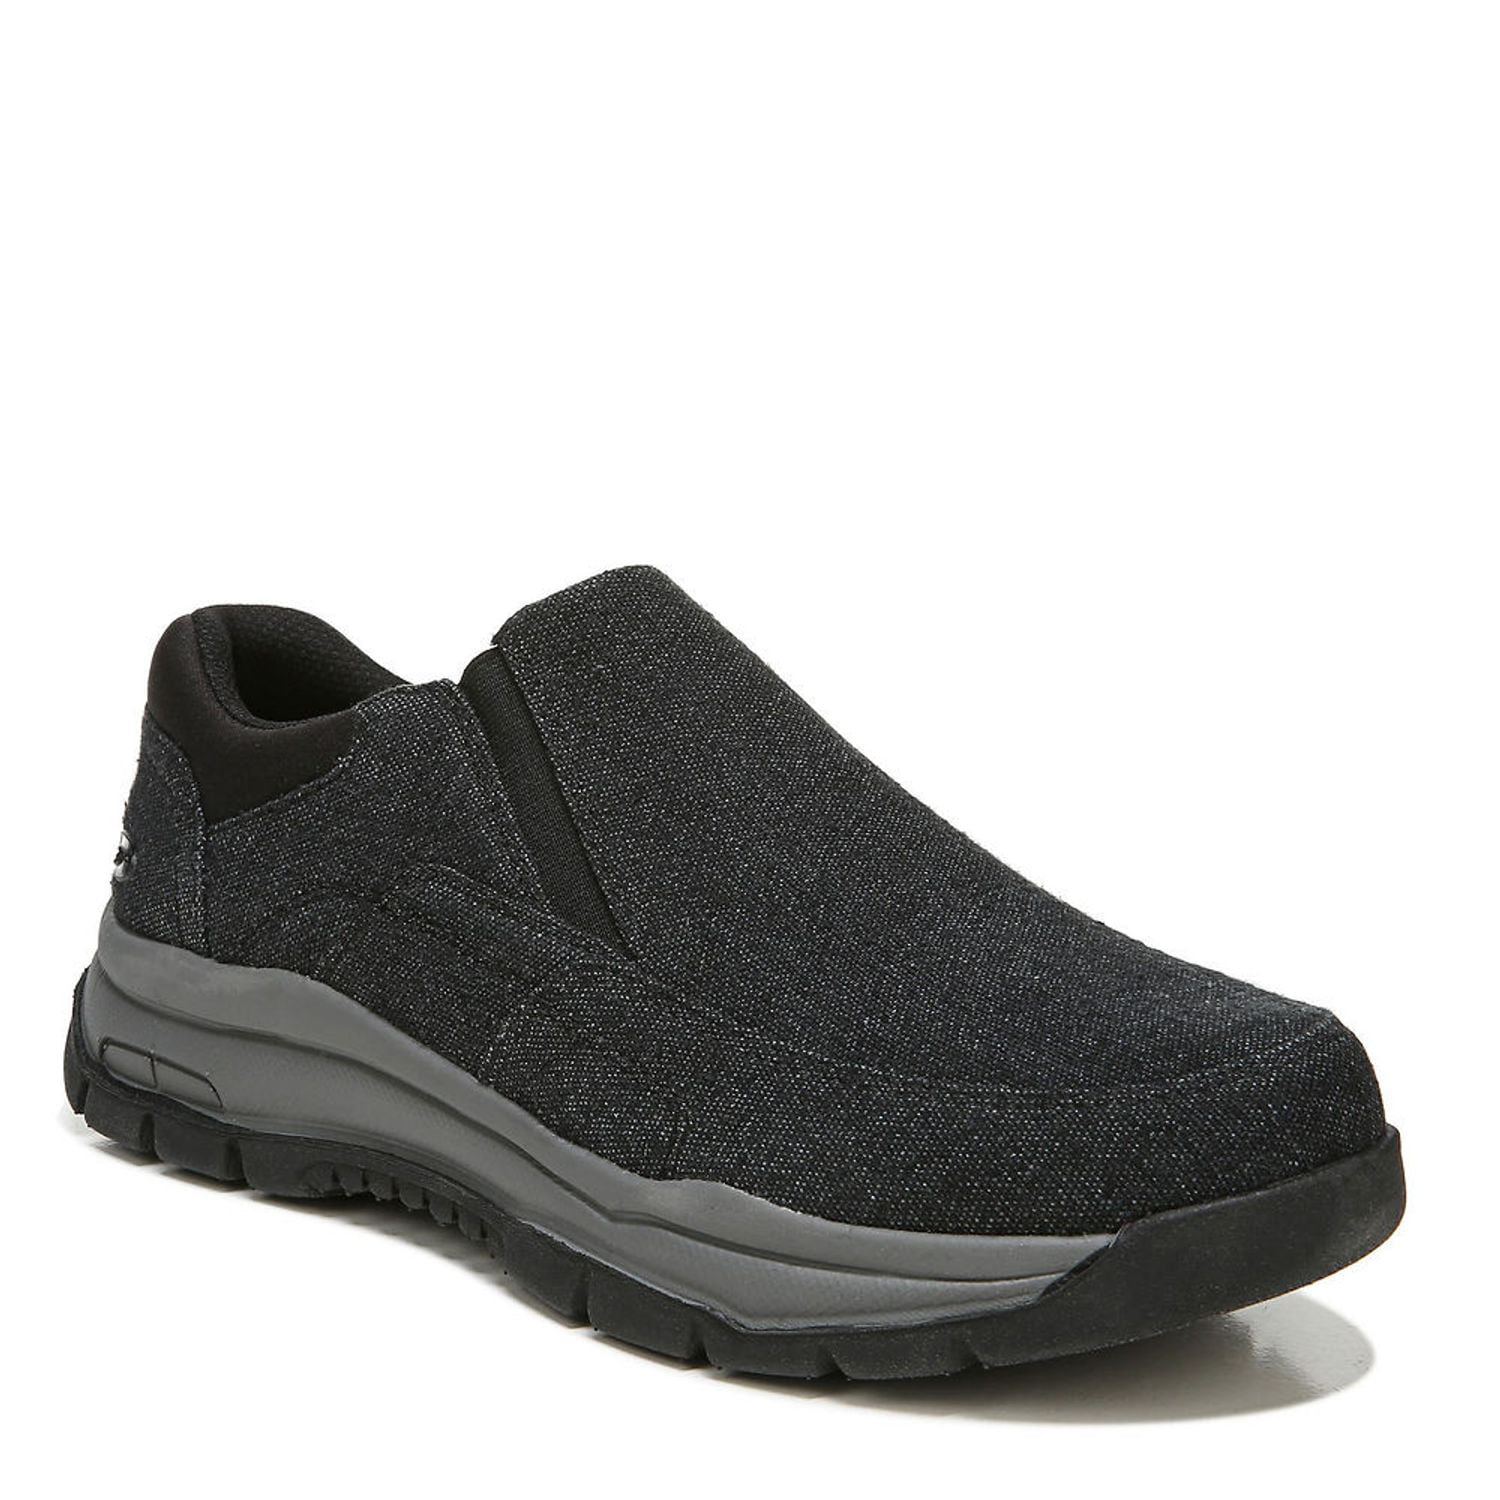 DR. SCHOLL'S Men's Vero Slip On Sneaker, Black 9 - Walmart.com